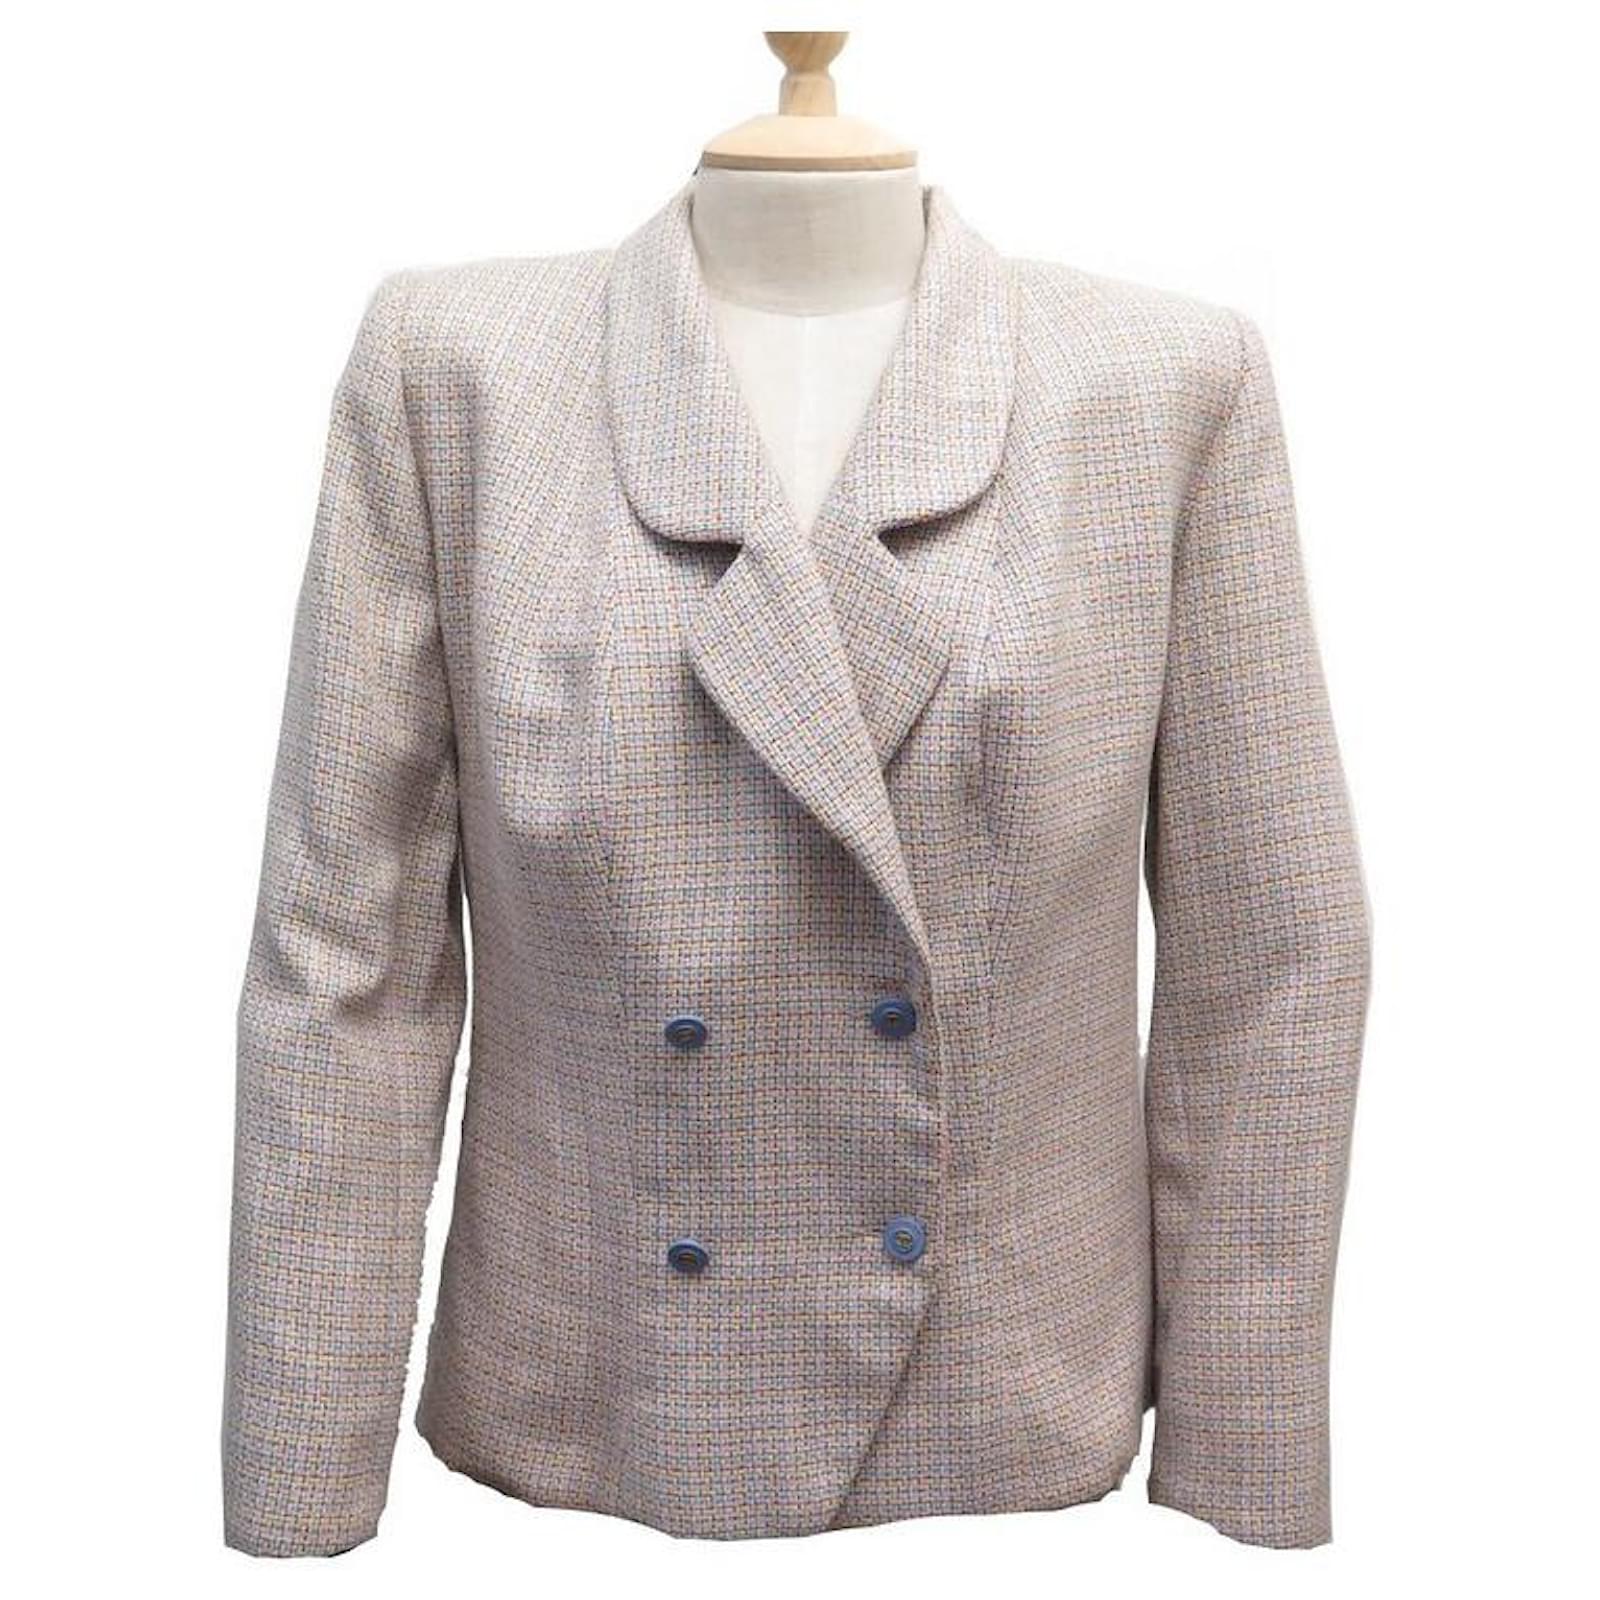 vintage chanel suit